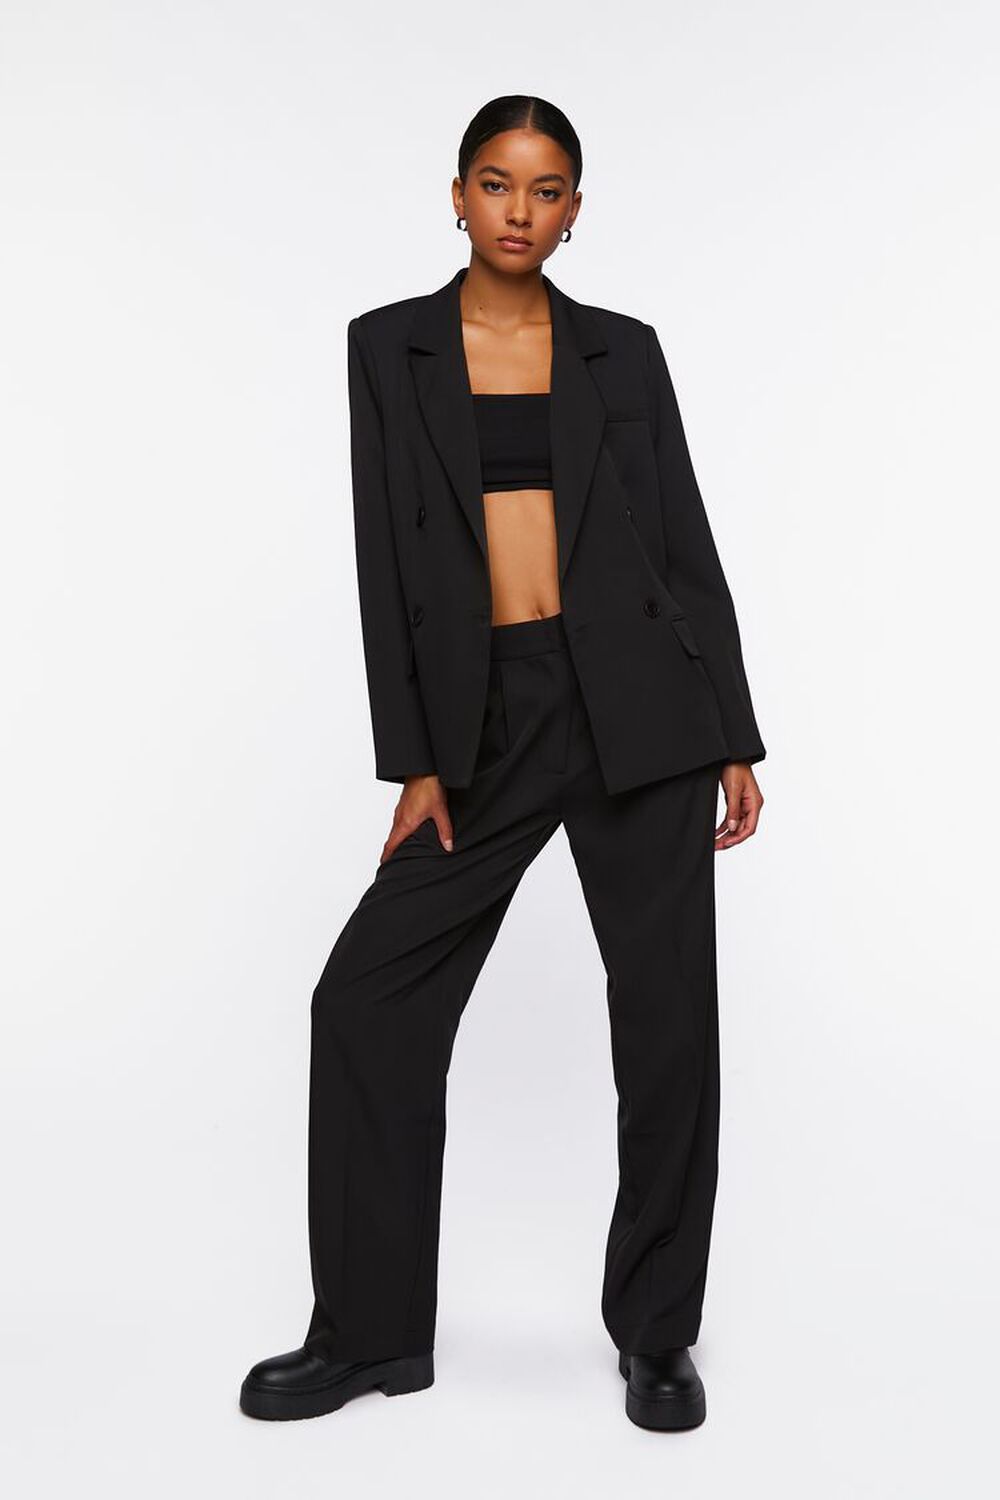 CUSTOM WOMEN SUIT, Black Suit Women,tailored Suit,personalized Business  Women Office Suit Pants Blazer Top, 2-piece Suit,multiple Colors -   Canada